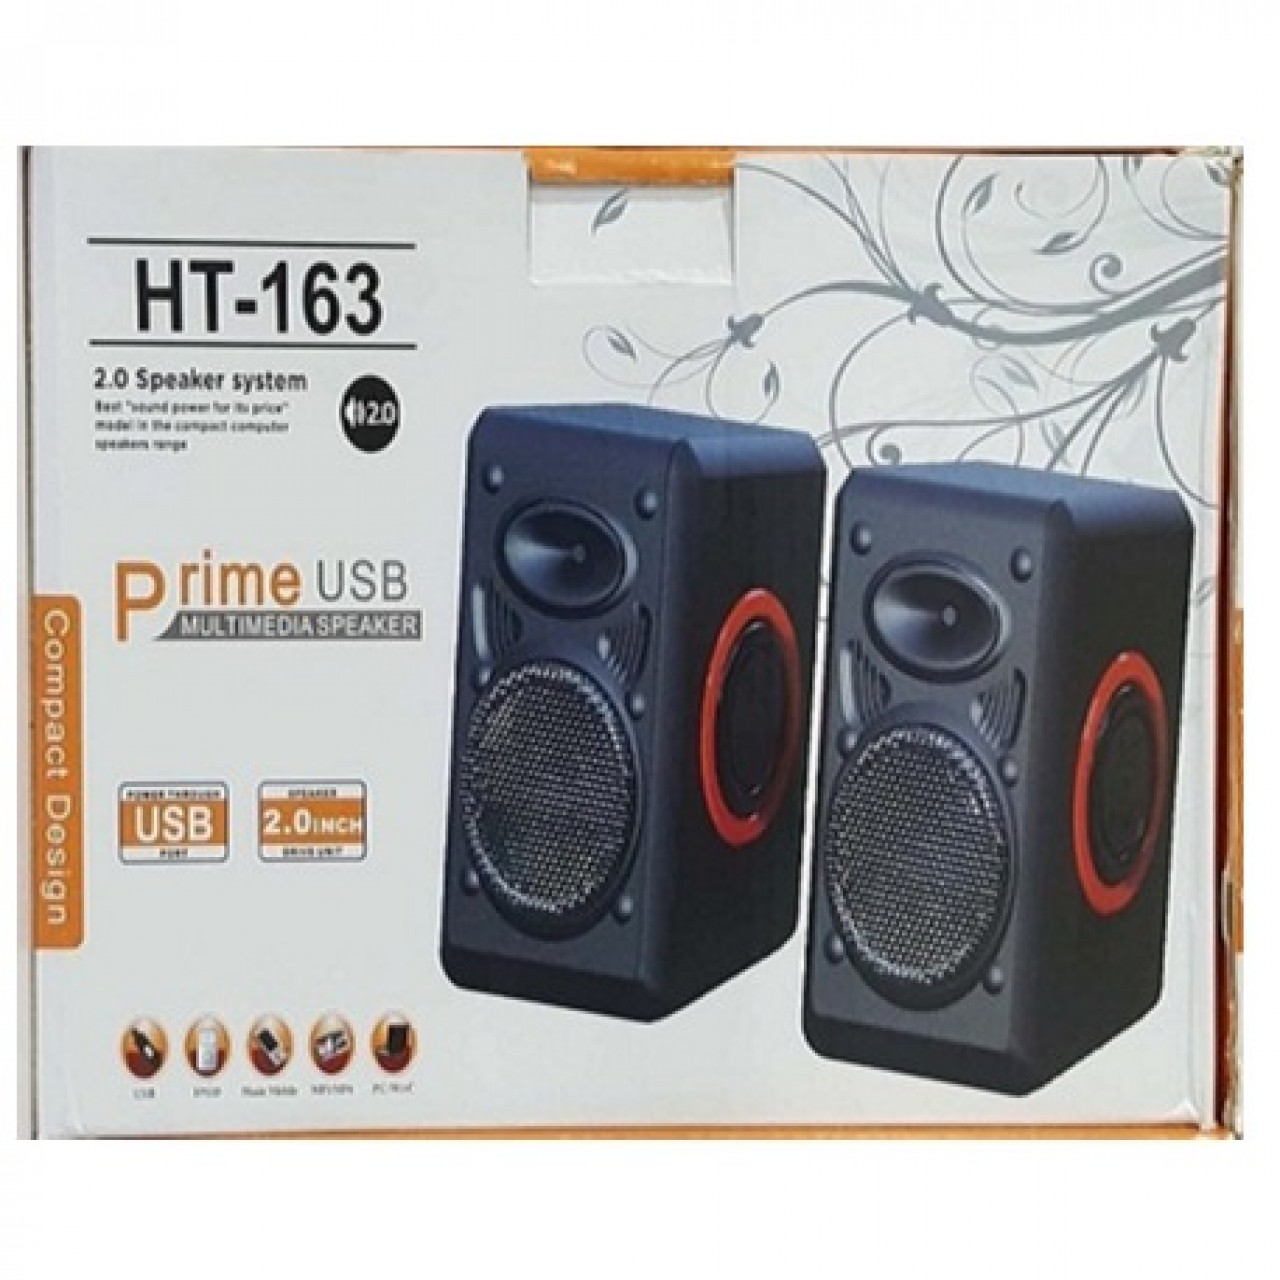 HT-163 Portable Multimedia Speakers for Laptops & Mobiles - USB Power